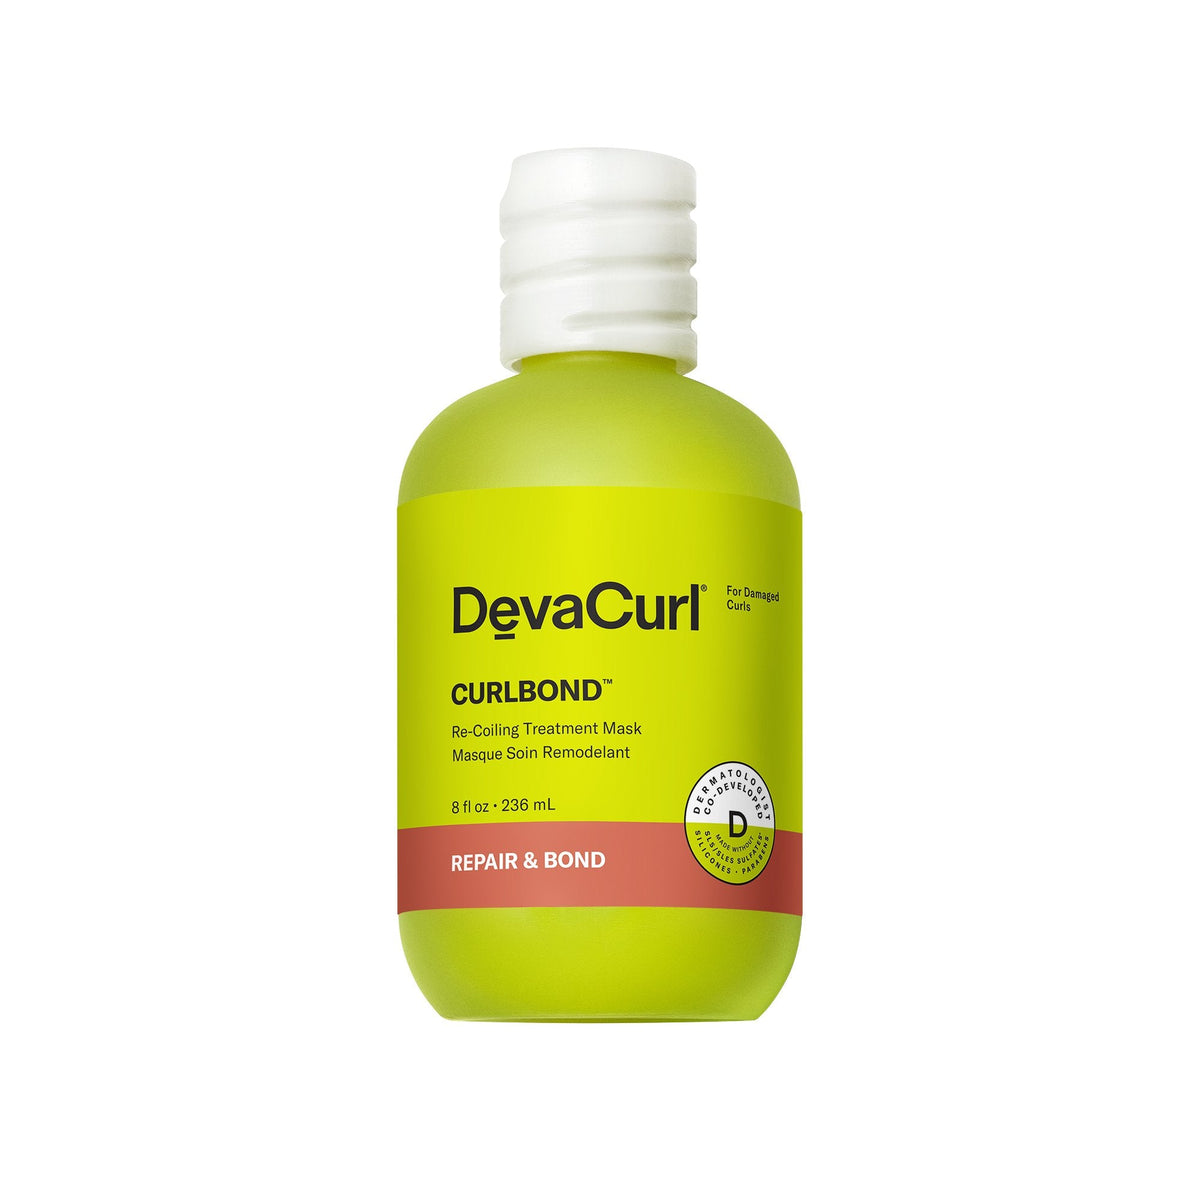 New! DevaCurl CurlBond Treatment Mask - 8oz - by Deva Curl |ProCare Outlet|